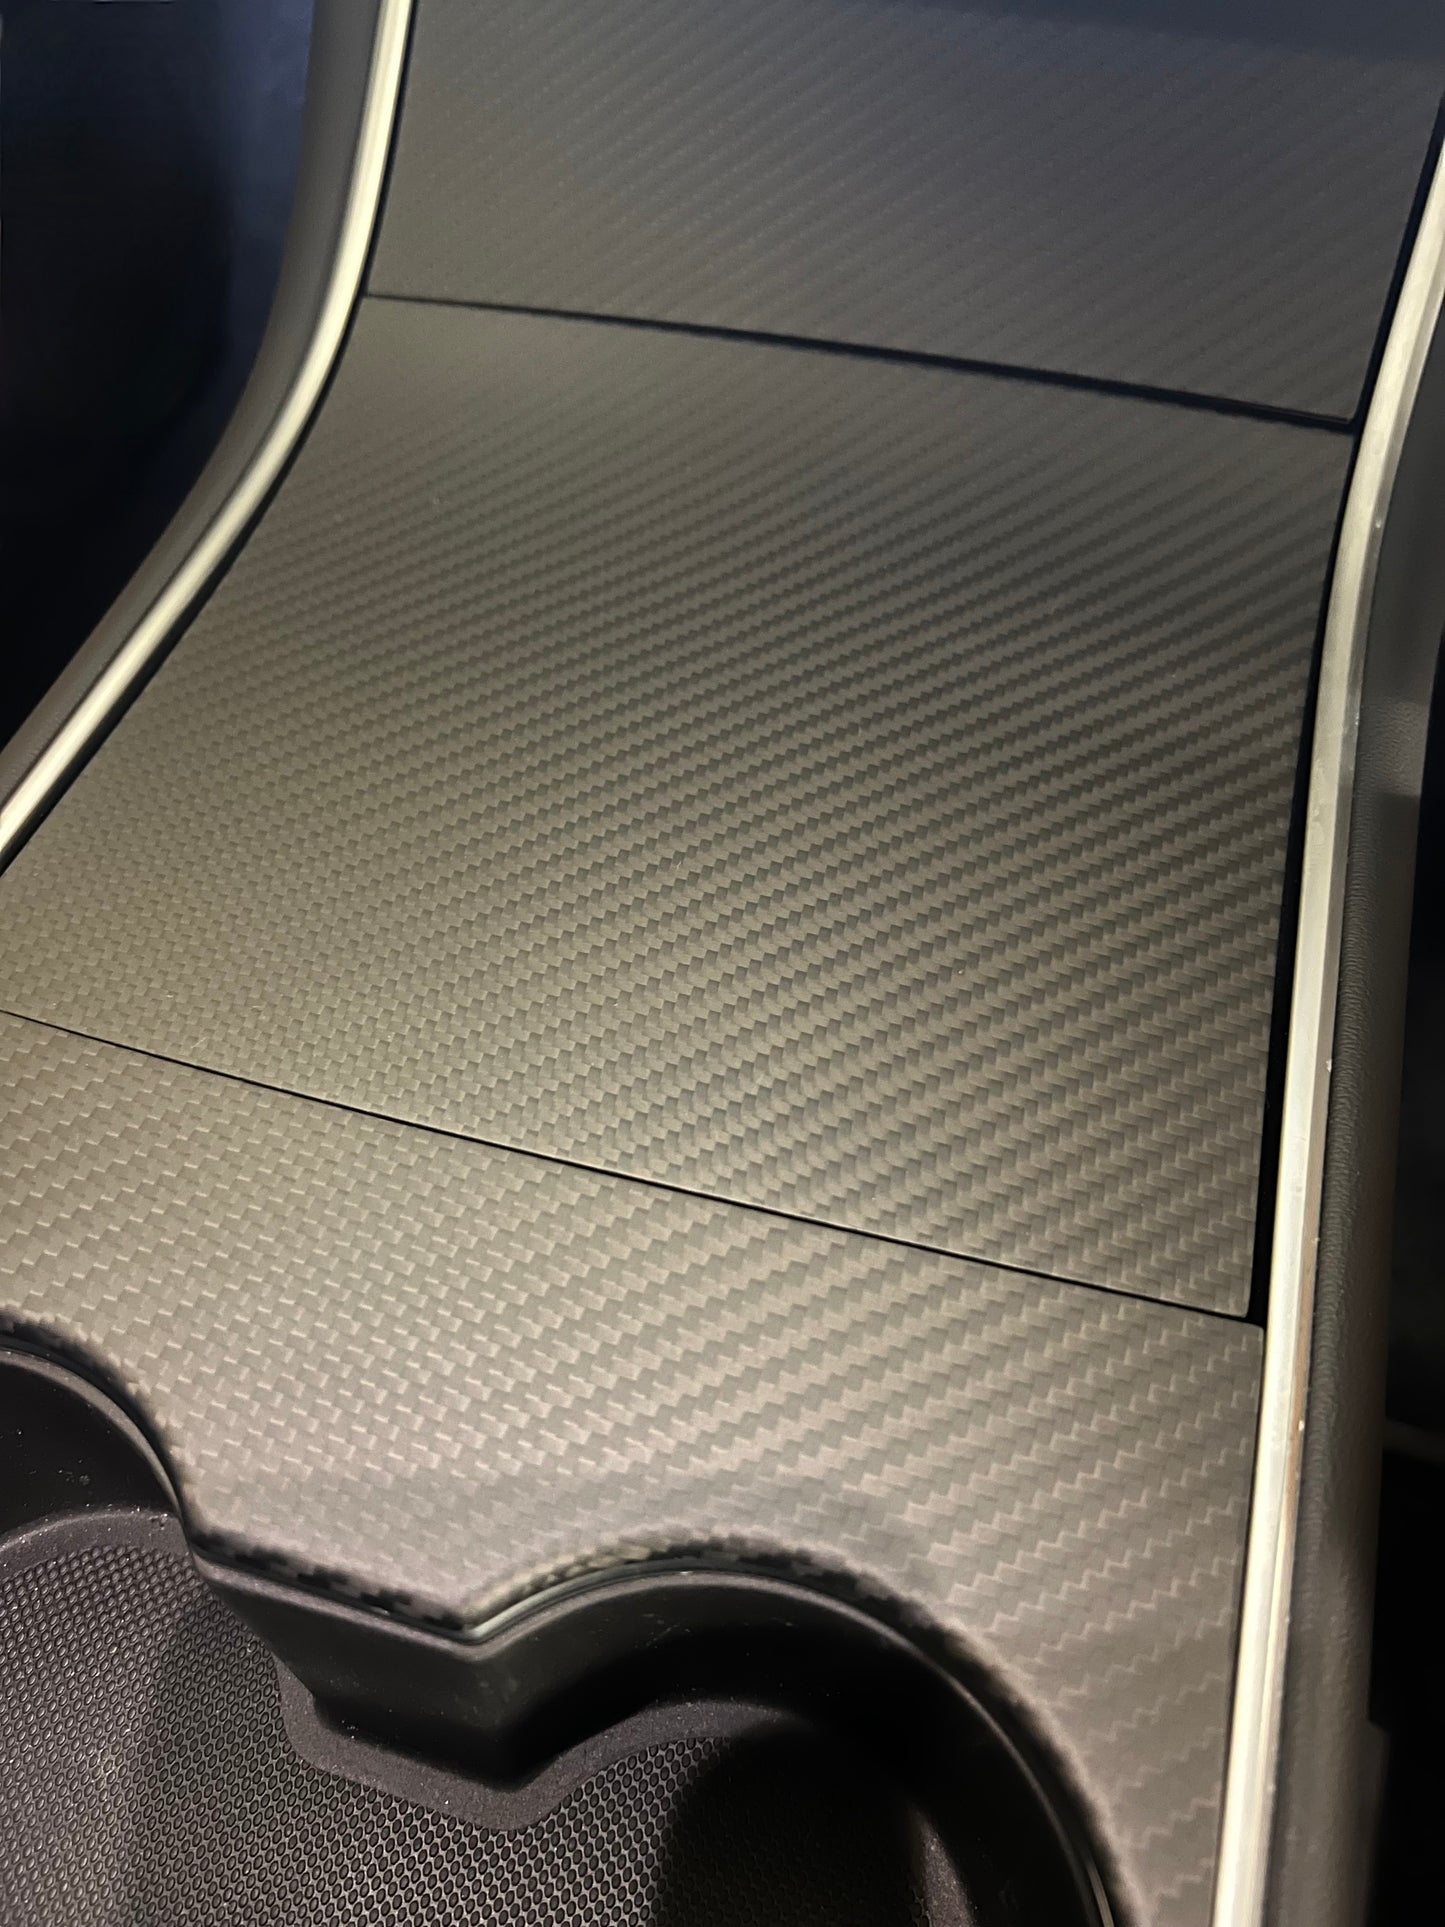 2017-2020 Model 3 Dry Carbon Center Console Trim Cover (Matte Carbon Fiber)